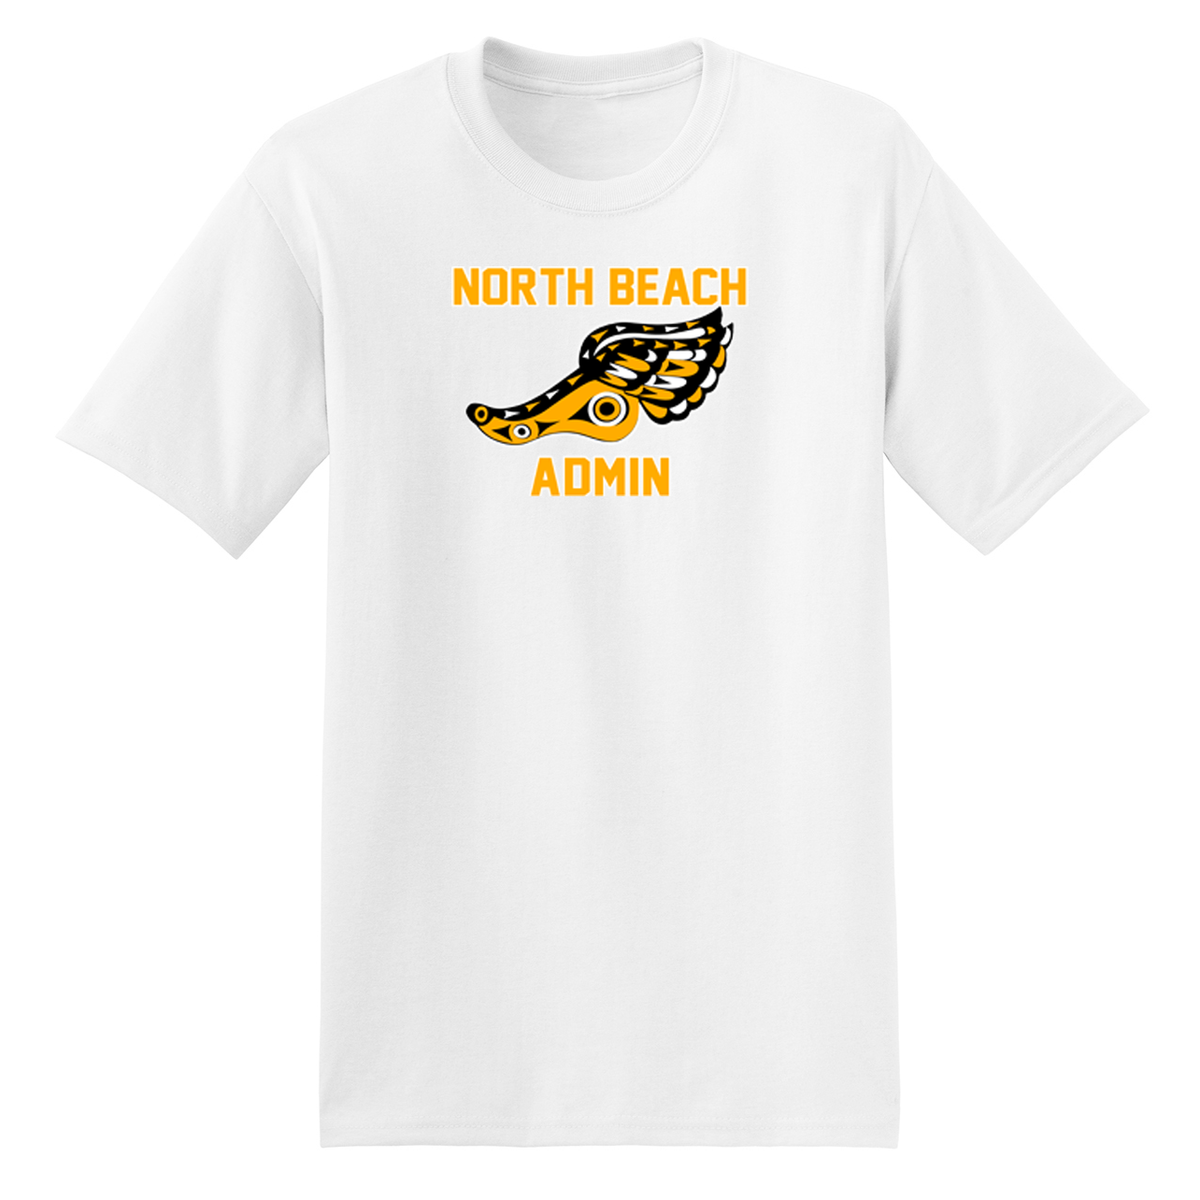 North Beach Admin  T-Shirt